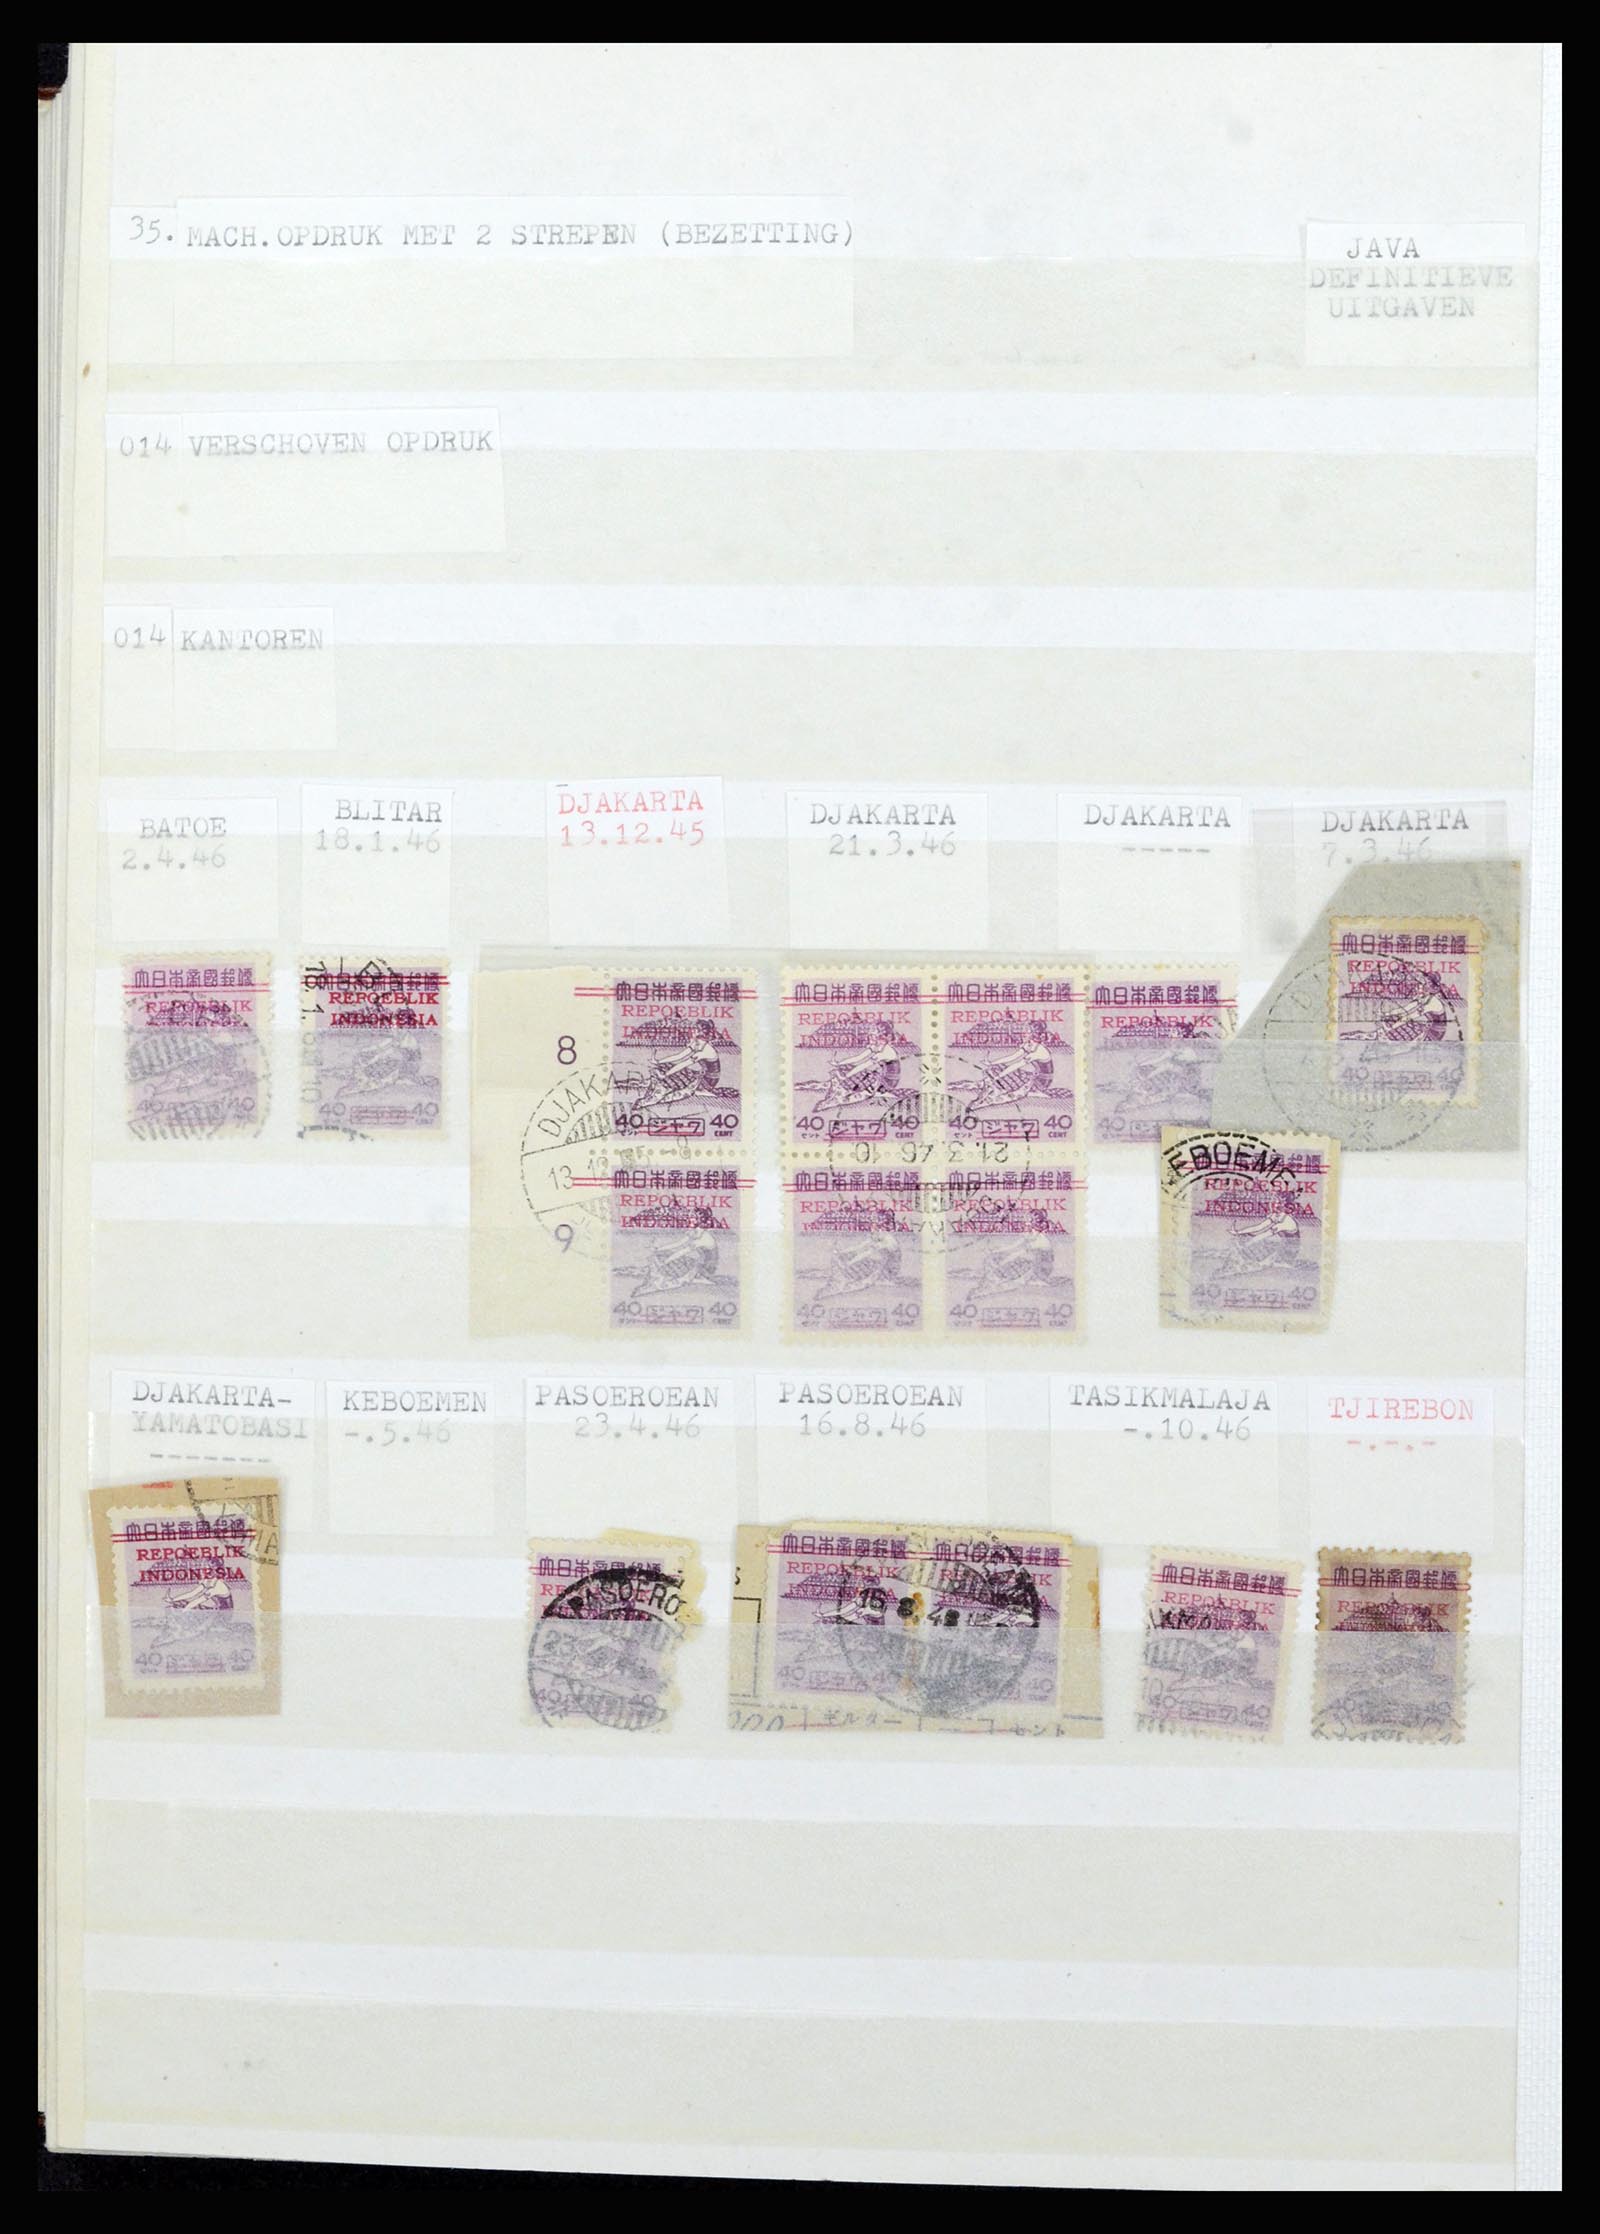 36742 331 - Stamp collection 36742 Dutch Indies interim period 1945-1949.